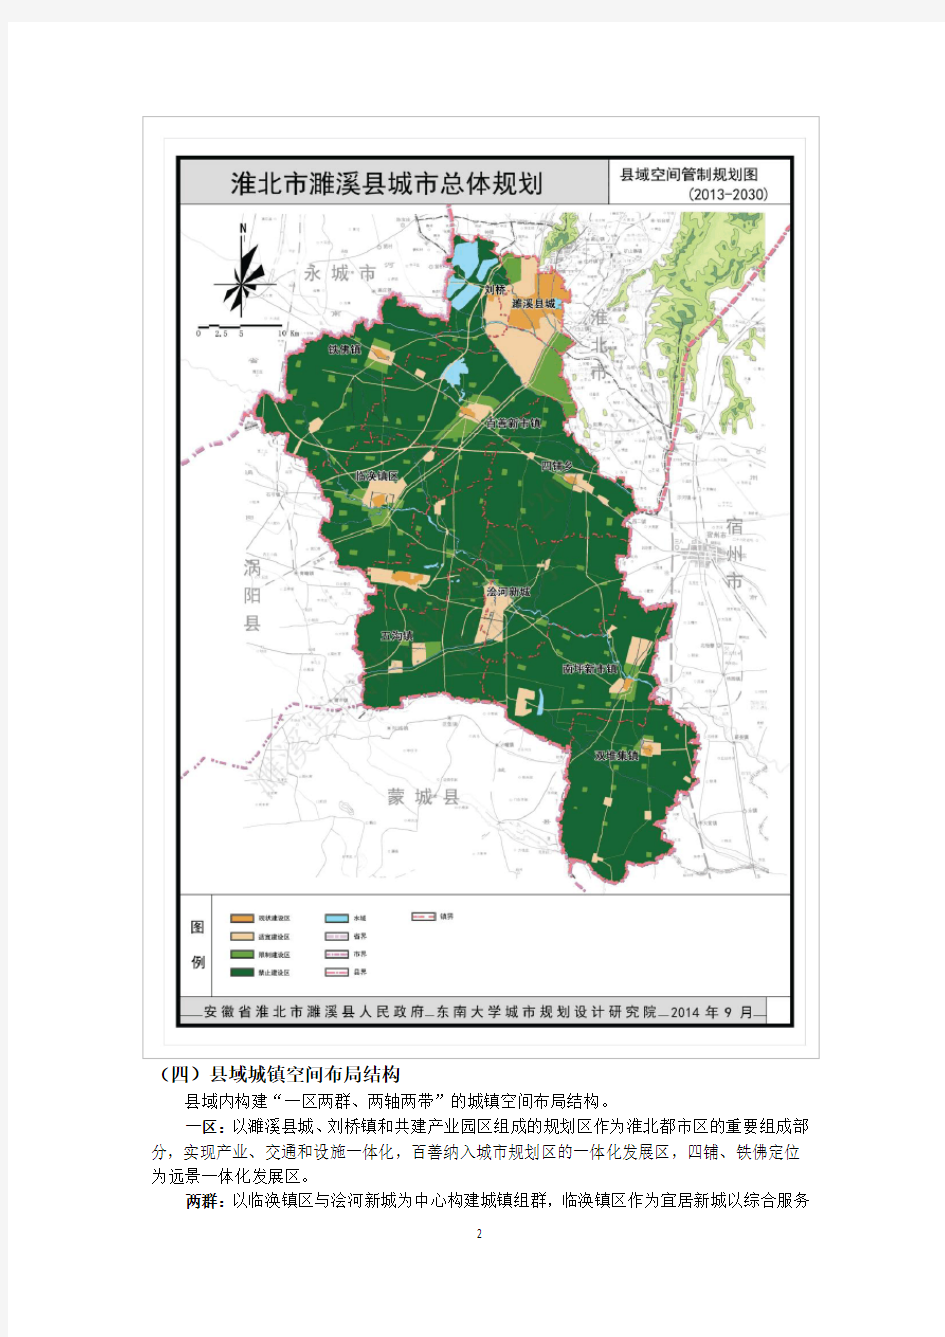 濉溪县城市总体规划(2013-2030)公示